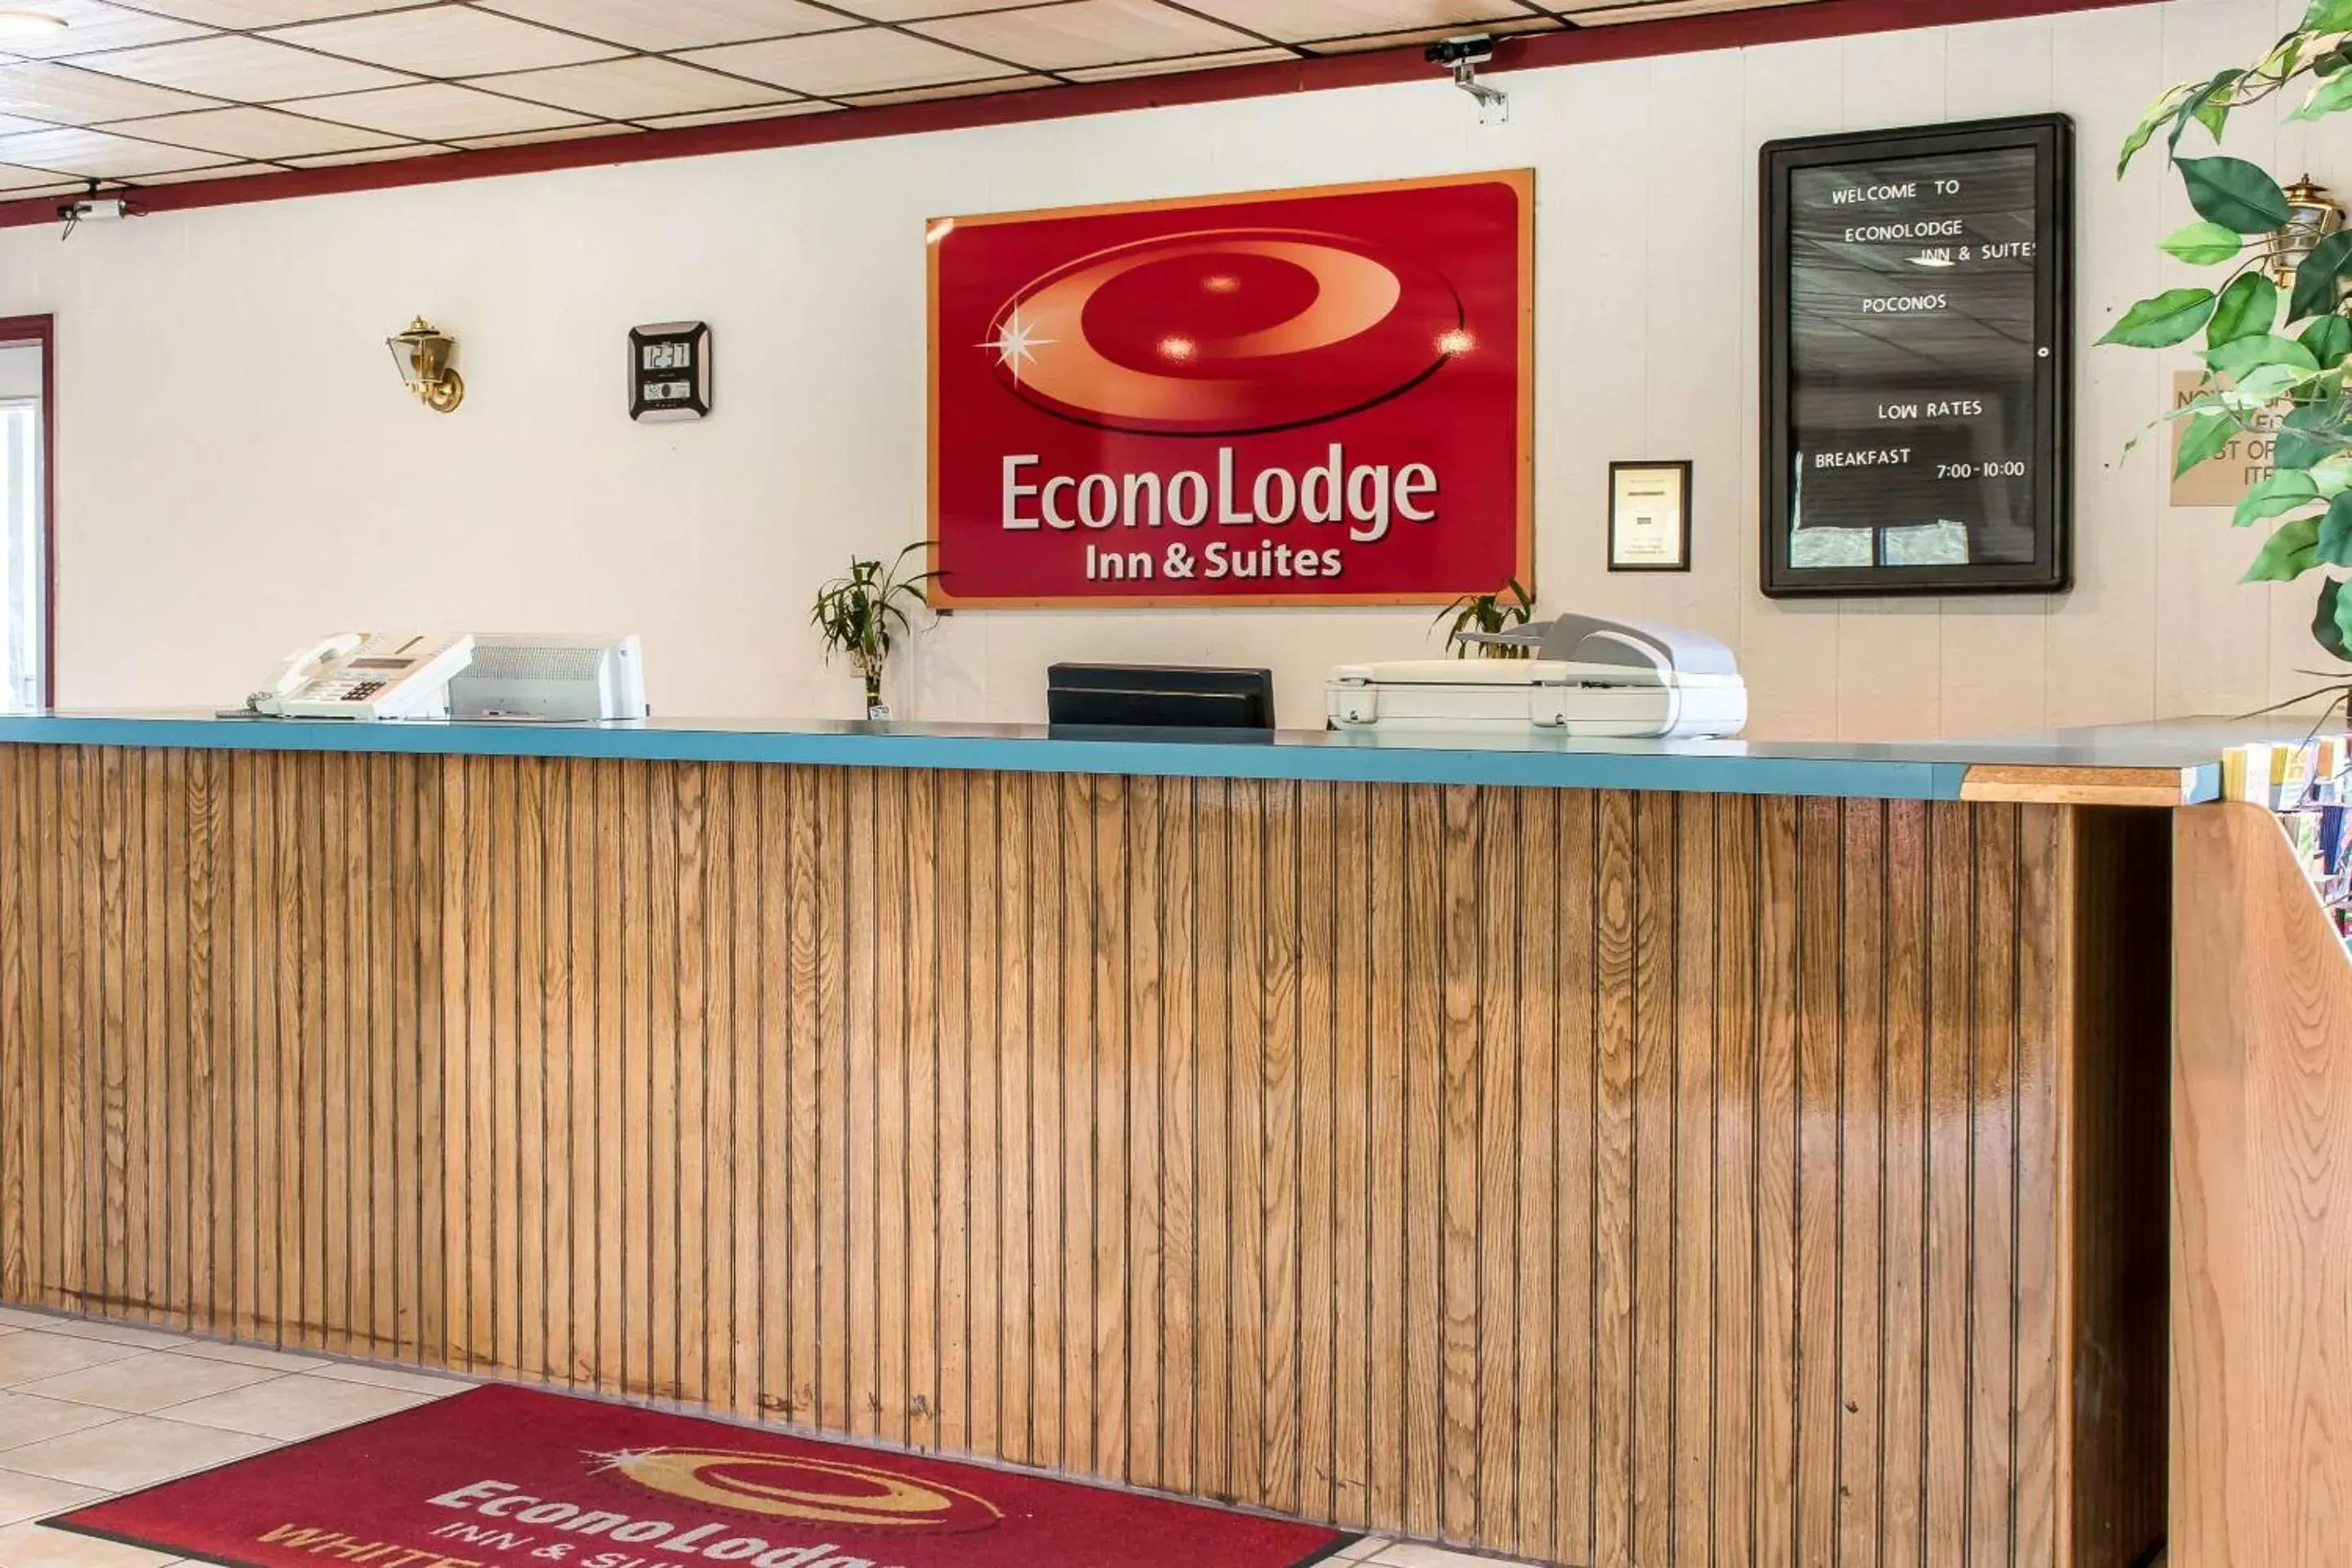 Lobby or reception, Lobby/Reception in Econo Lodge Inn & Suites Pocono near Lake Harmony